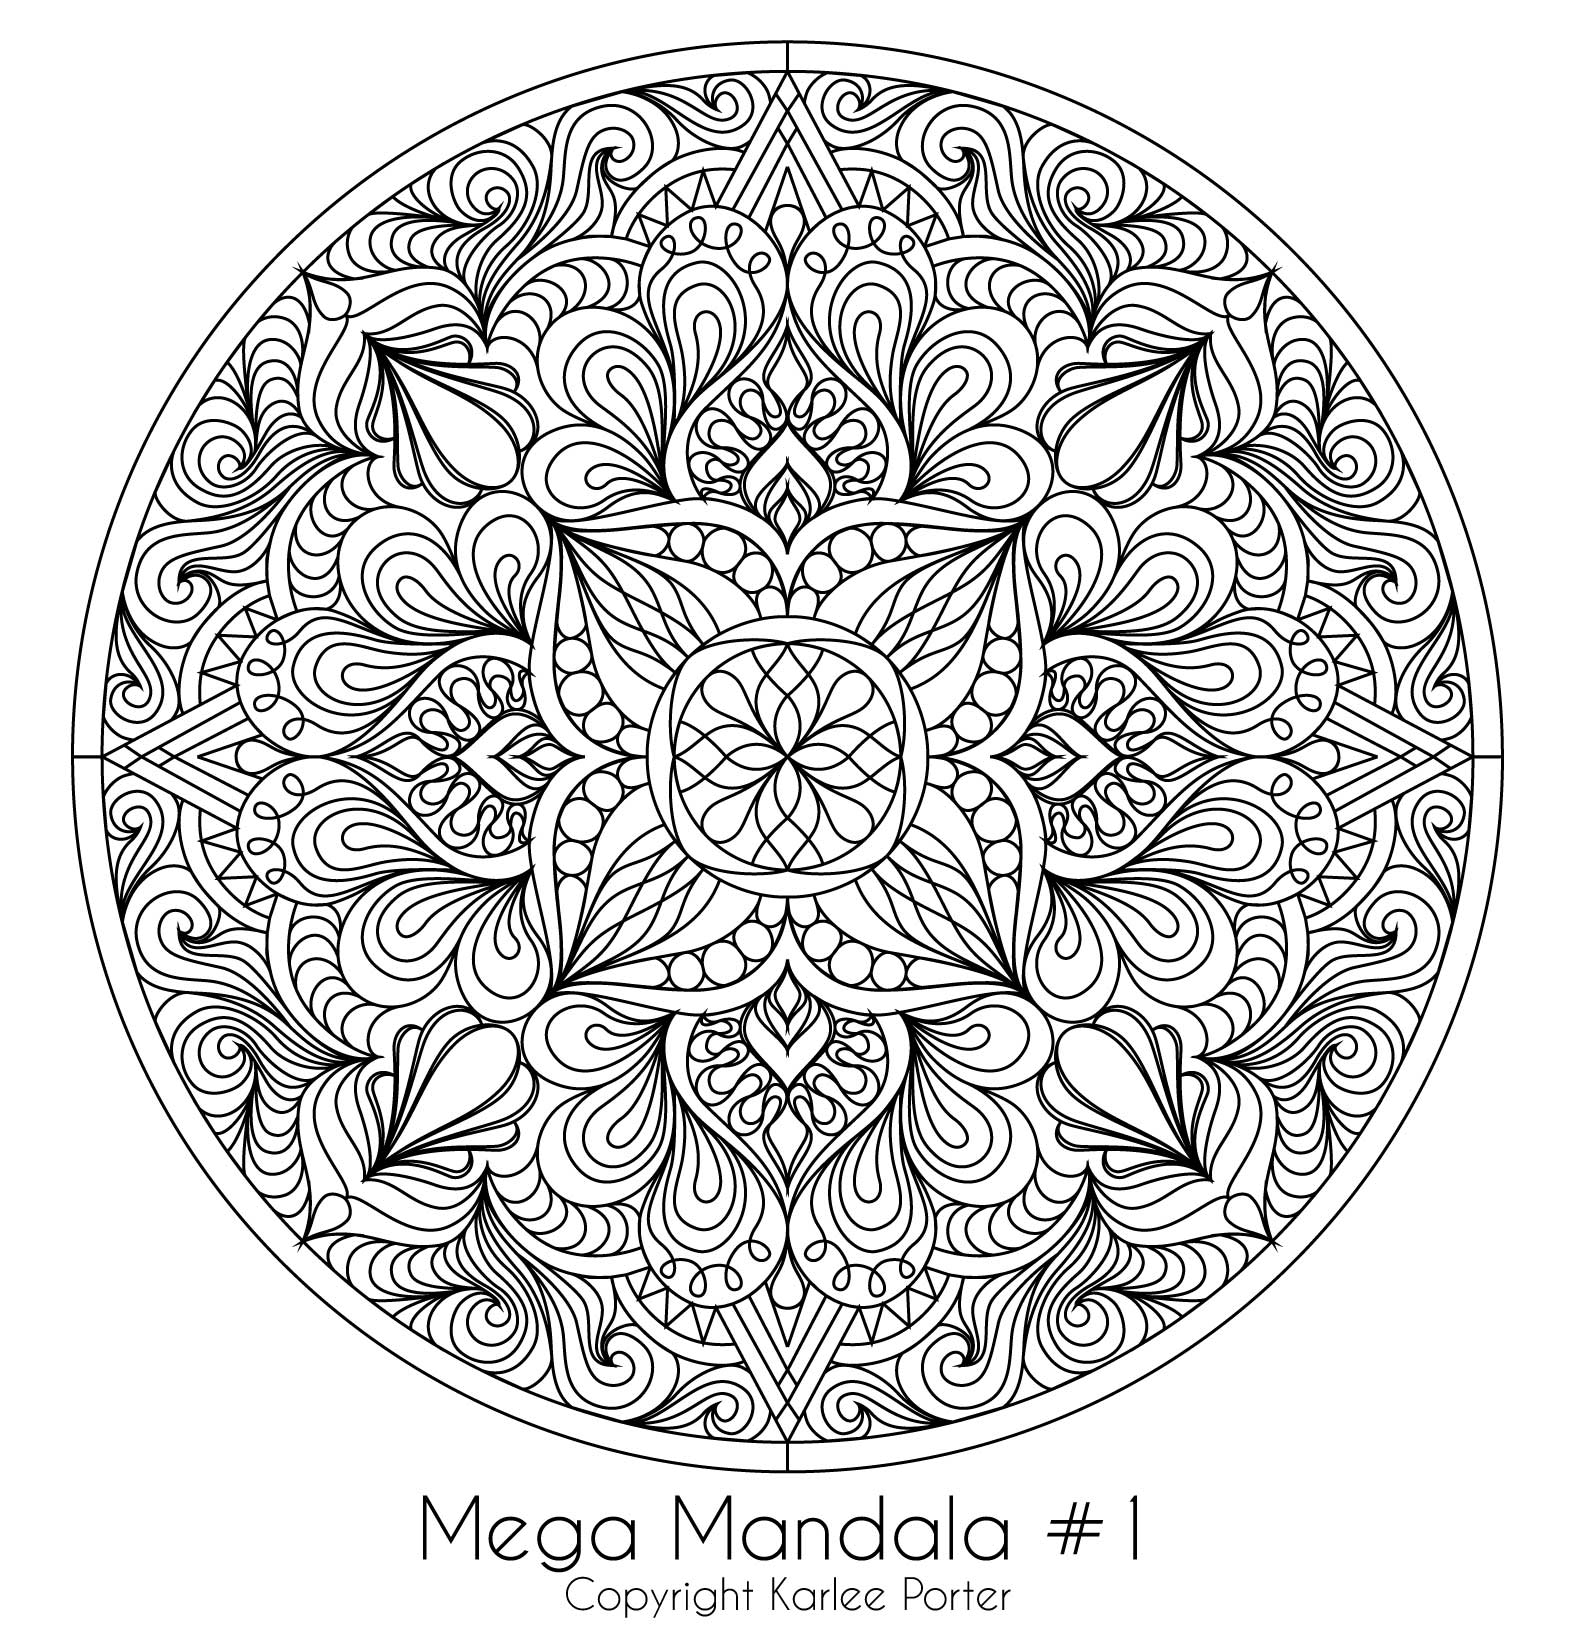 Mega Mandala #1